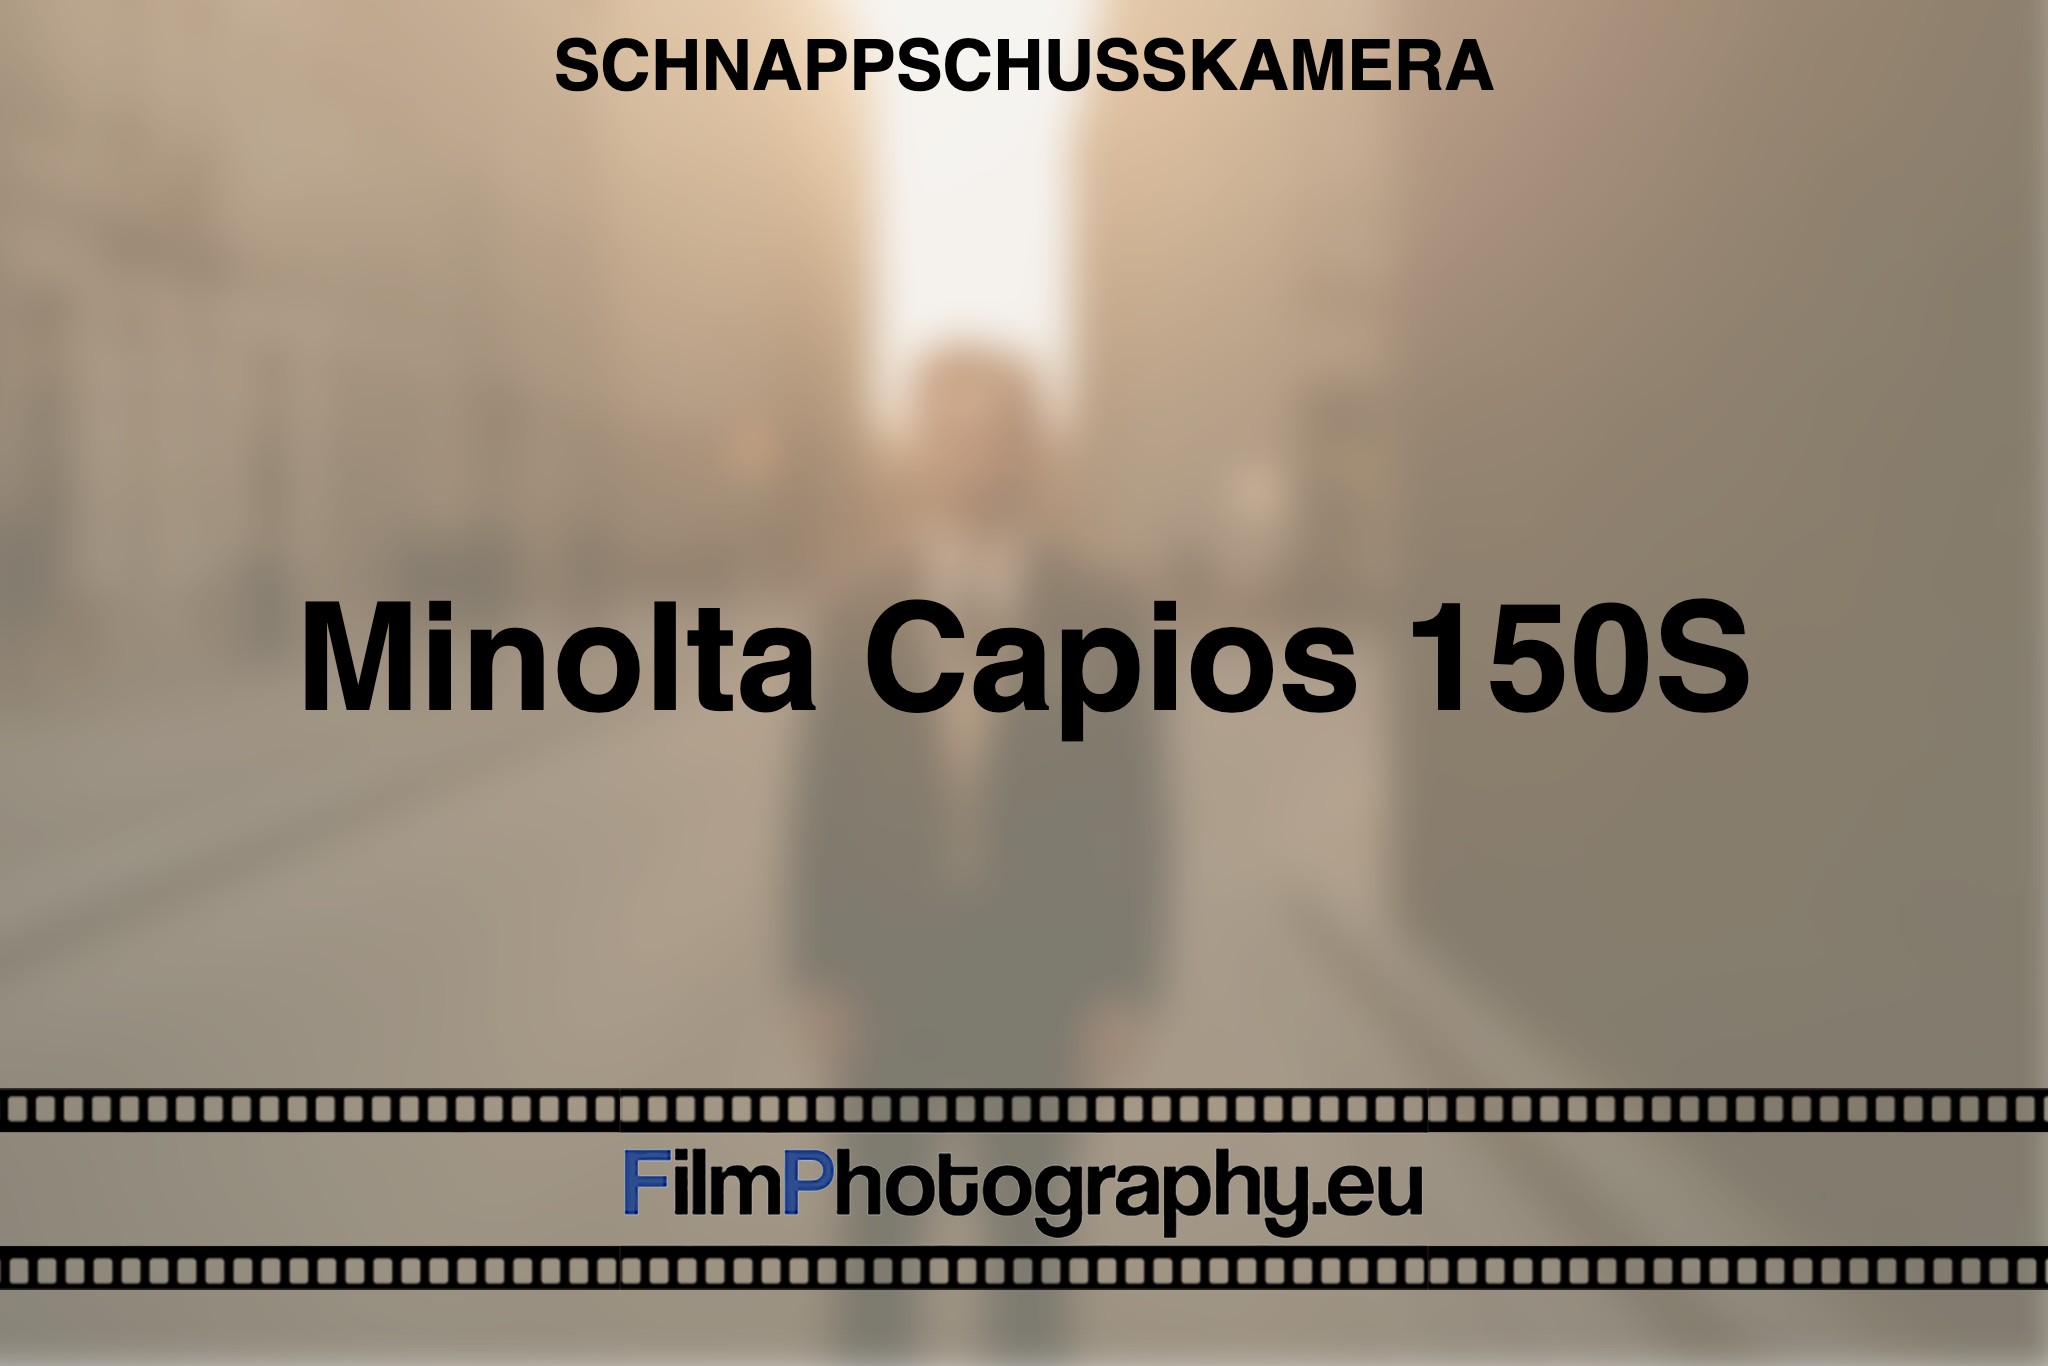 minolta-capios-150s-schnappschusskamera-bnv